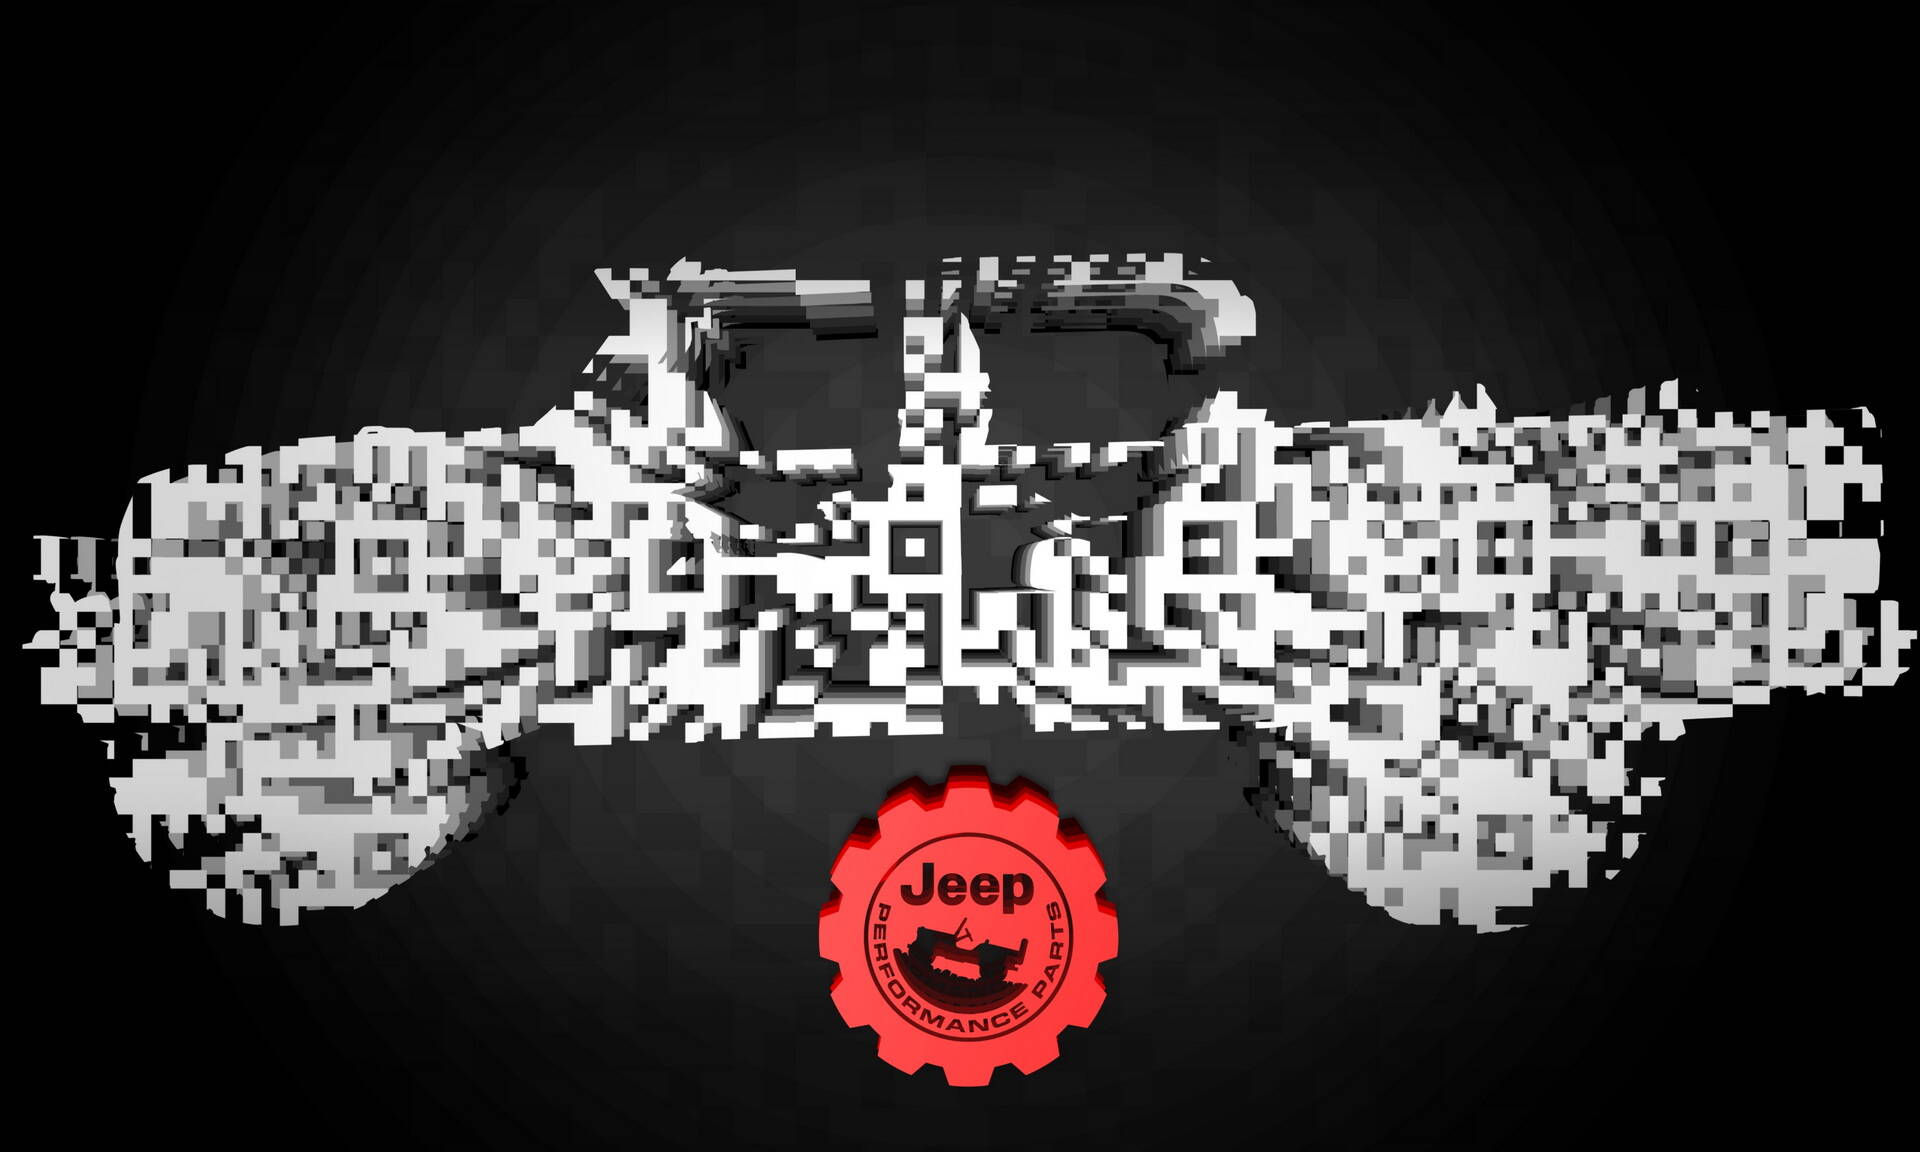 Jeep Wrangler Magneto 2.0. Foto: Divulgação